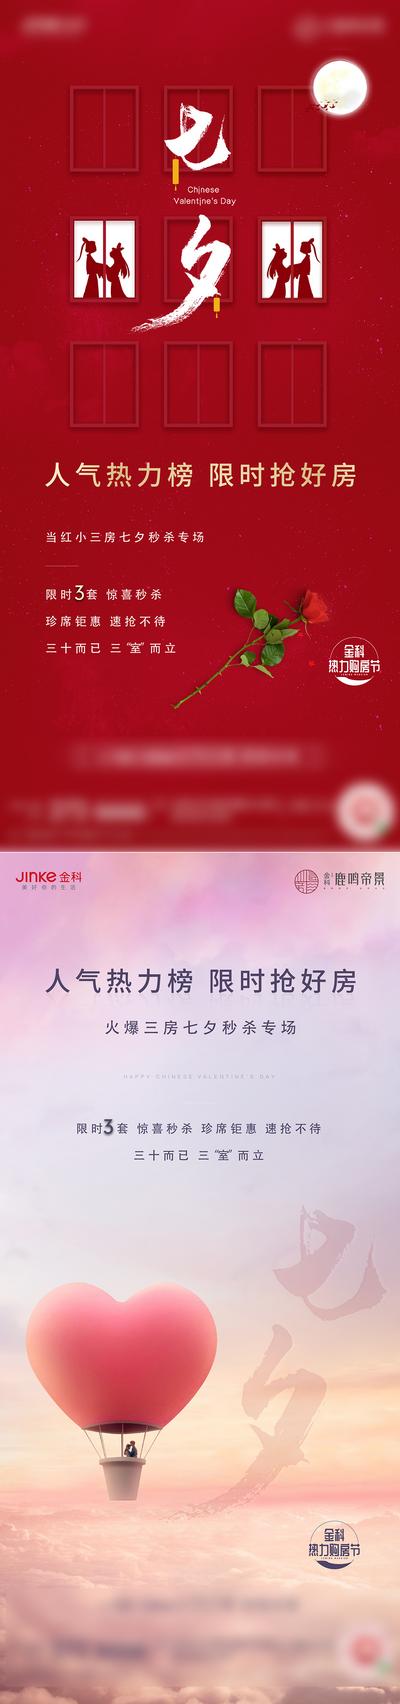 南门网 广告 海报 节日 七夕 情人节 系列 玫瑰 214 浪漫 520